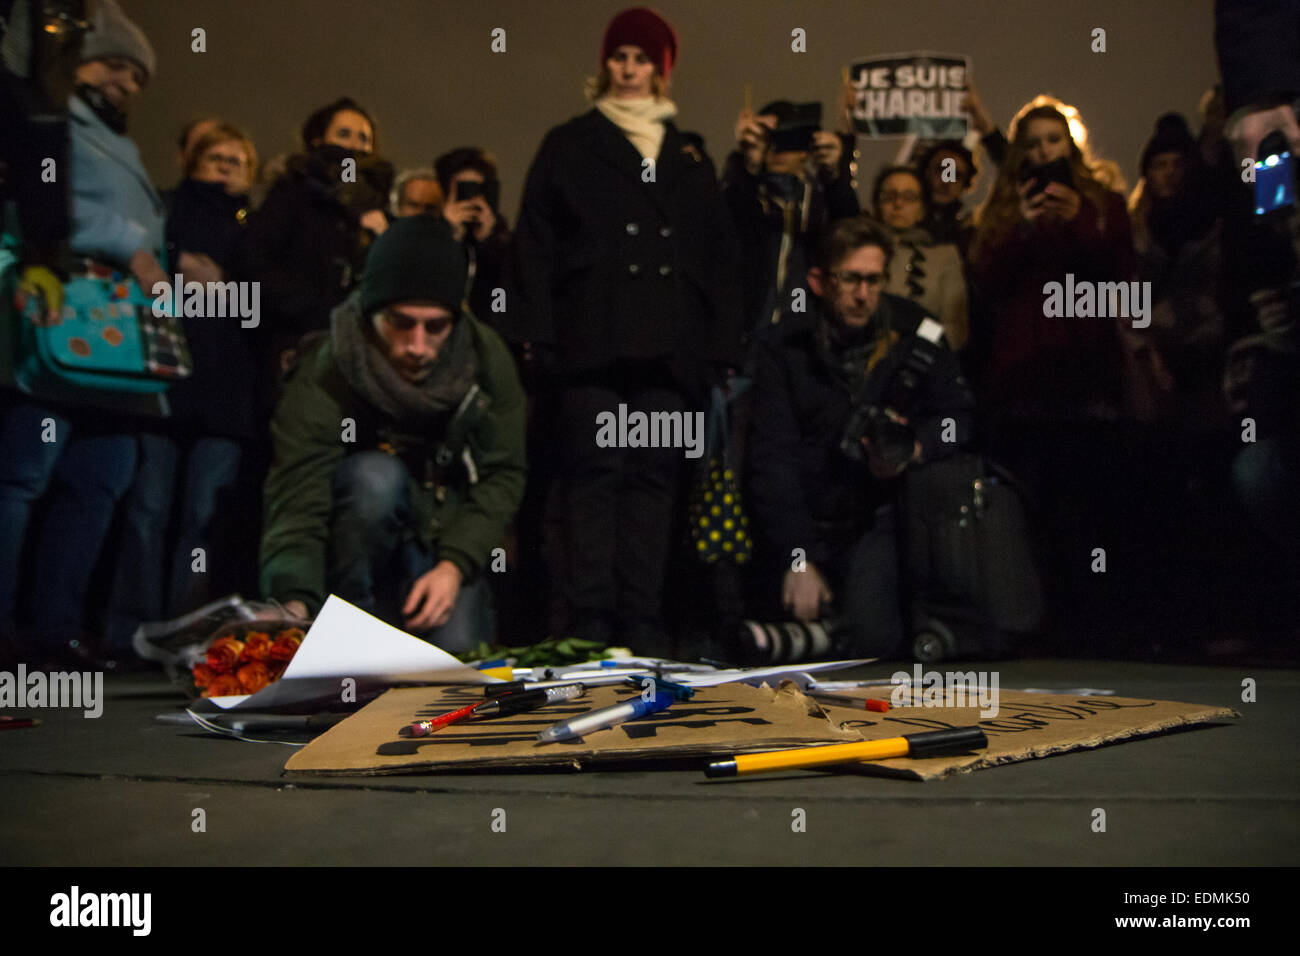 Londres, Royaume-Uni. 7 janvier, 2015. Les Londoniens se rassemblent à Trafalgar Square pour honorer le Charlie Hebdo Crédit : Zefrog victimes/Alamy Live News Banque D'Images